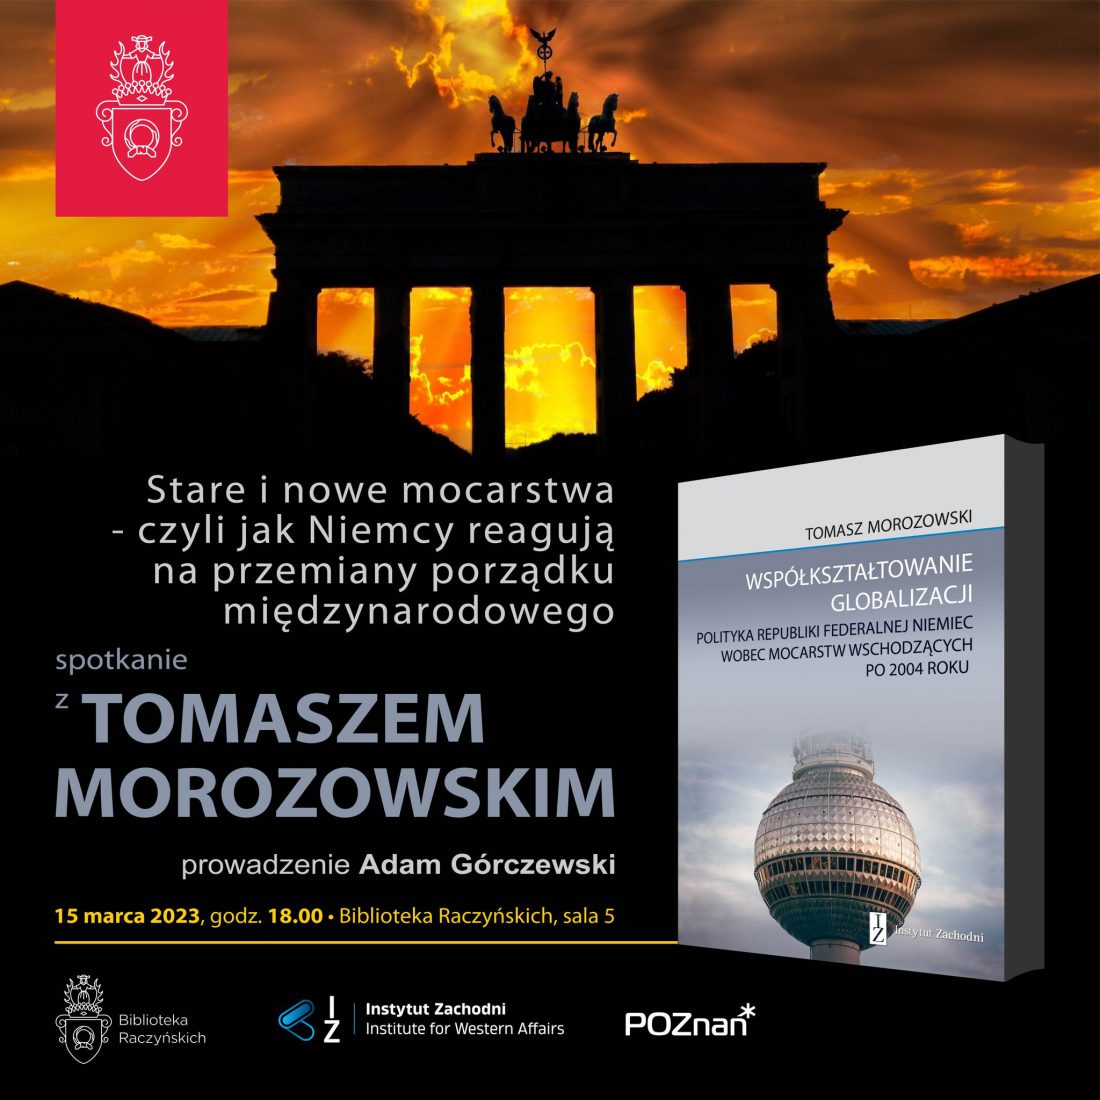 Na tle wschodzącego słońca widać ciemny kształt Bramy Brandenburskiej . Poniżej okładka książki Tomasza Morozowskiego ze zdjęciem berlińskiej wieży telewizyjnej w kształcie kuli.